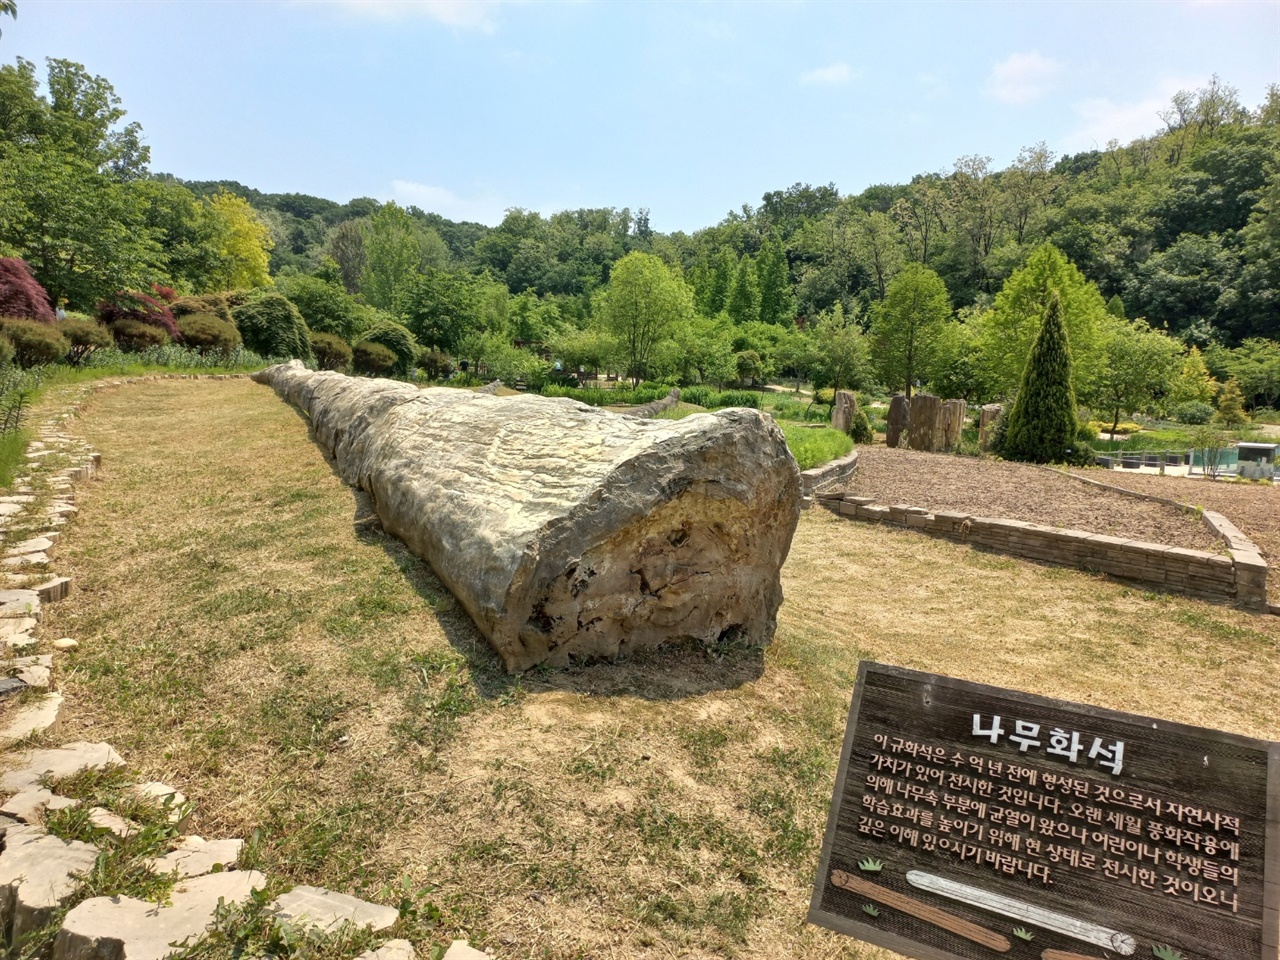 아시아에서 가장 크다는 나무 화석도 전시되어 있었다. 규화목 중에서 화석화가 잘 진행된 것은 보석으로도 사용한다고 한다.